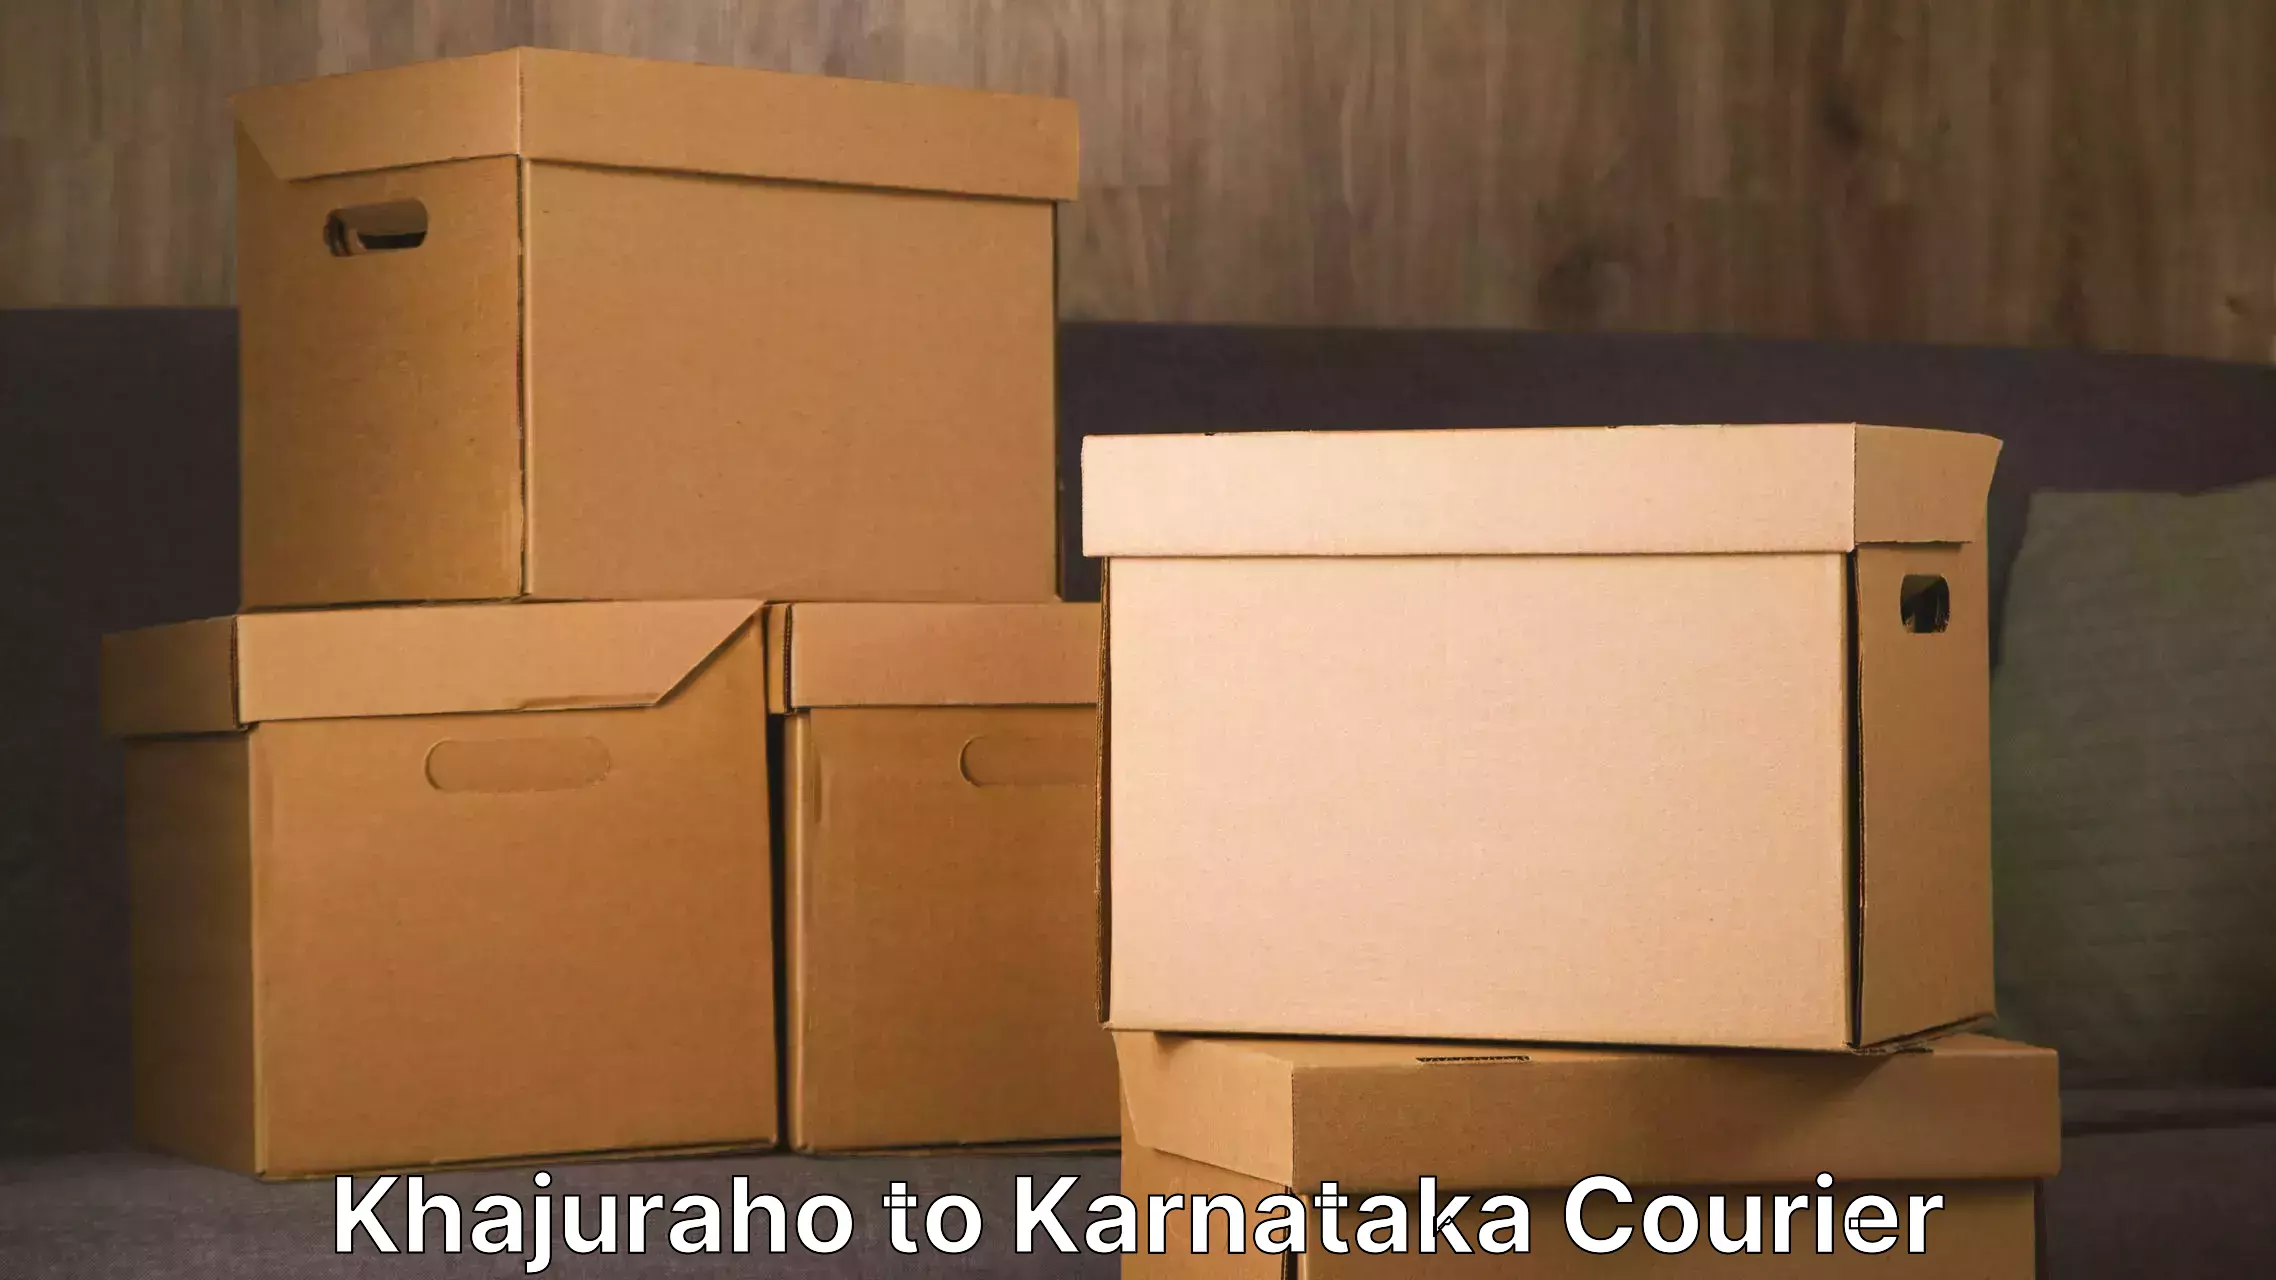 Customized relocation services Khajuraho to Karnataka